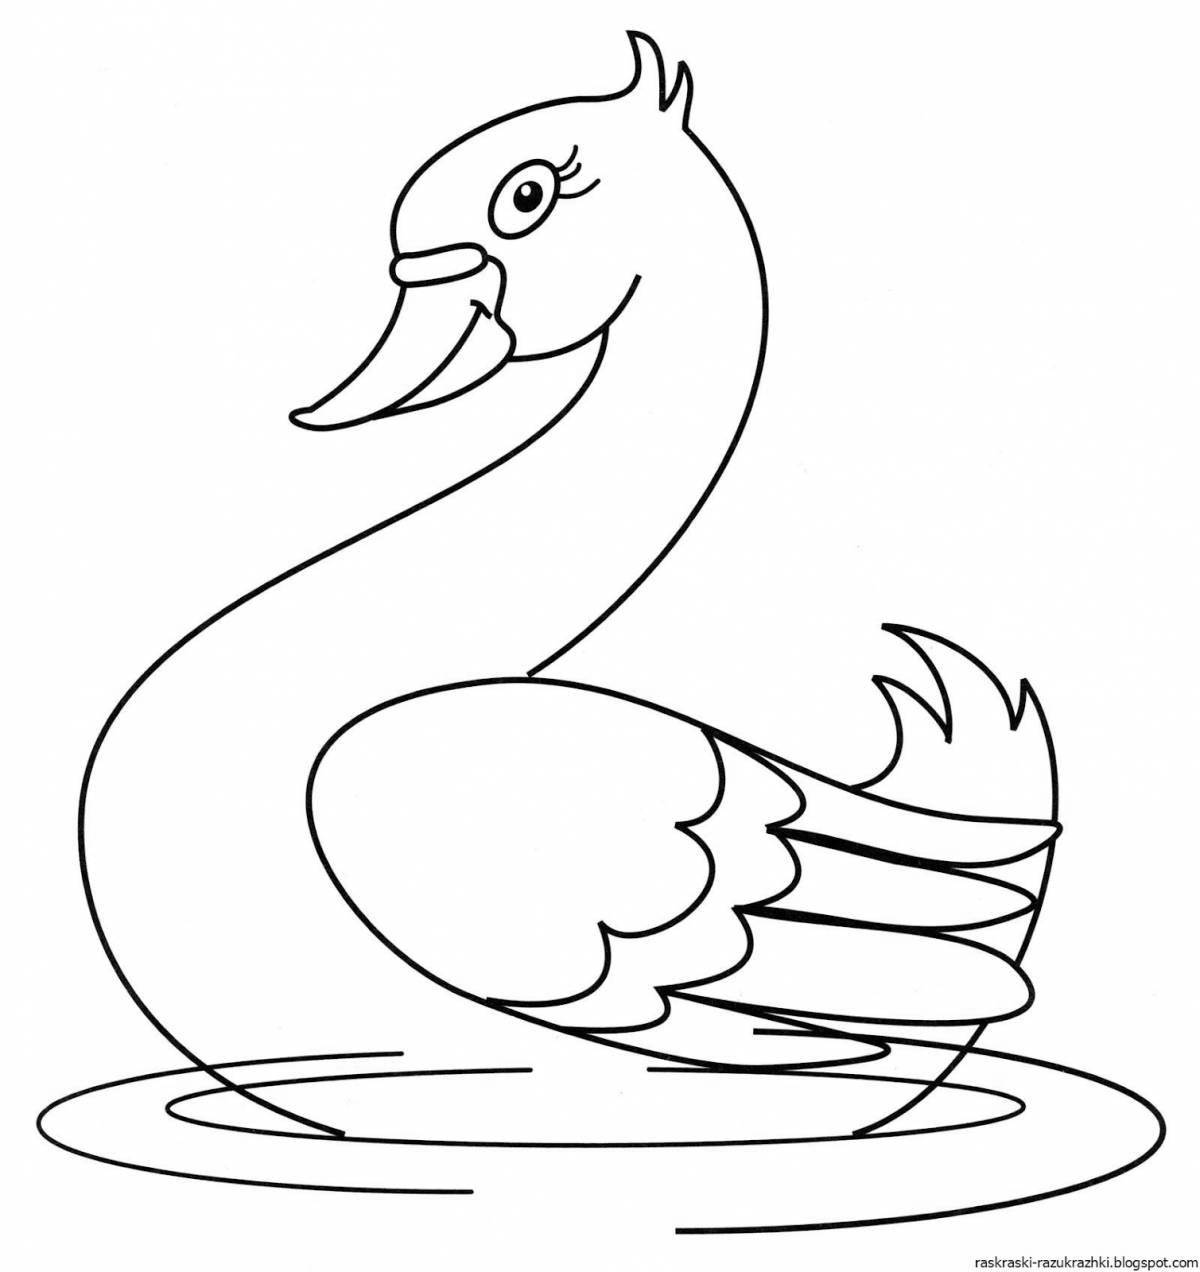 Fun swan coloring book for kids